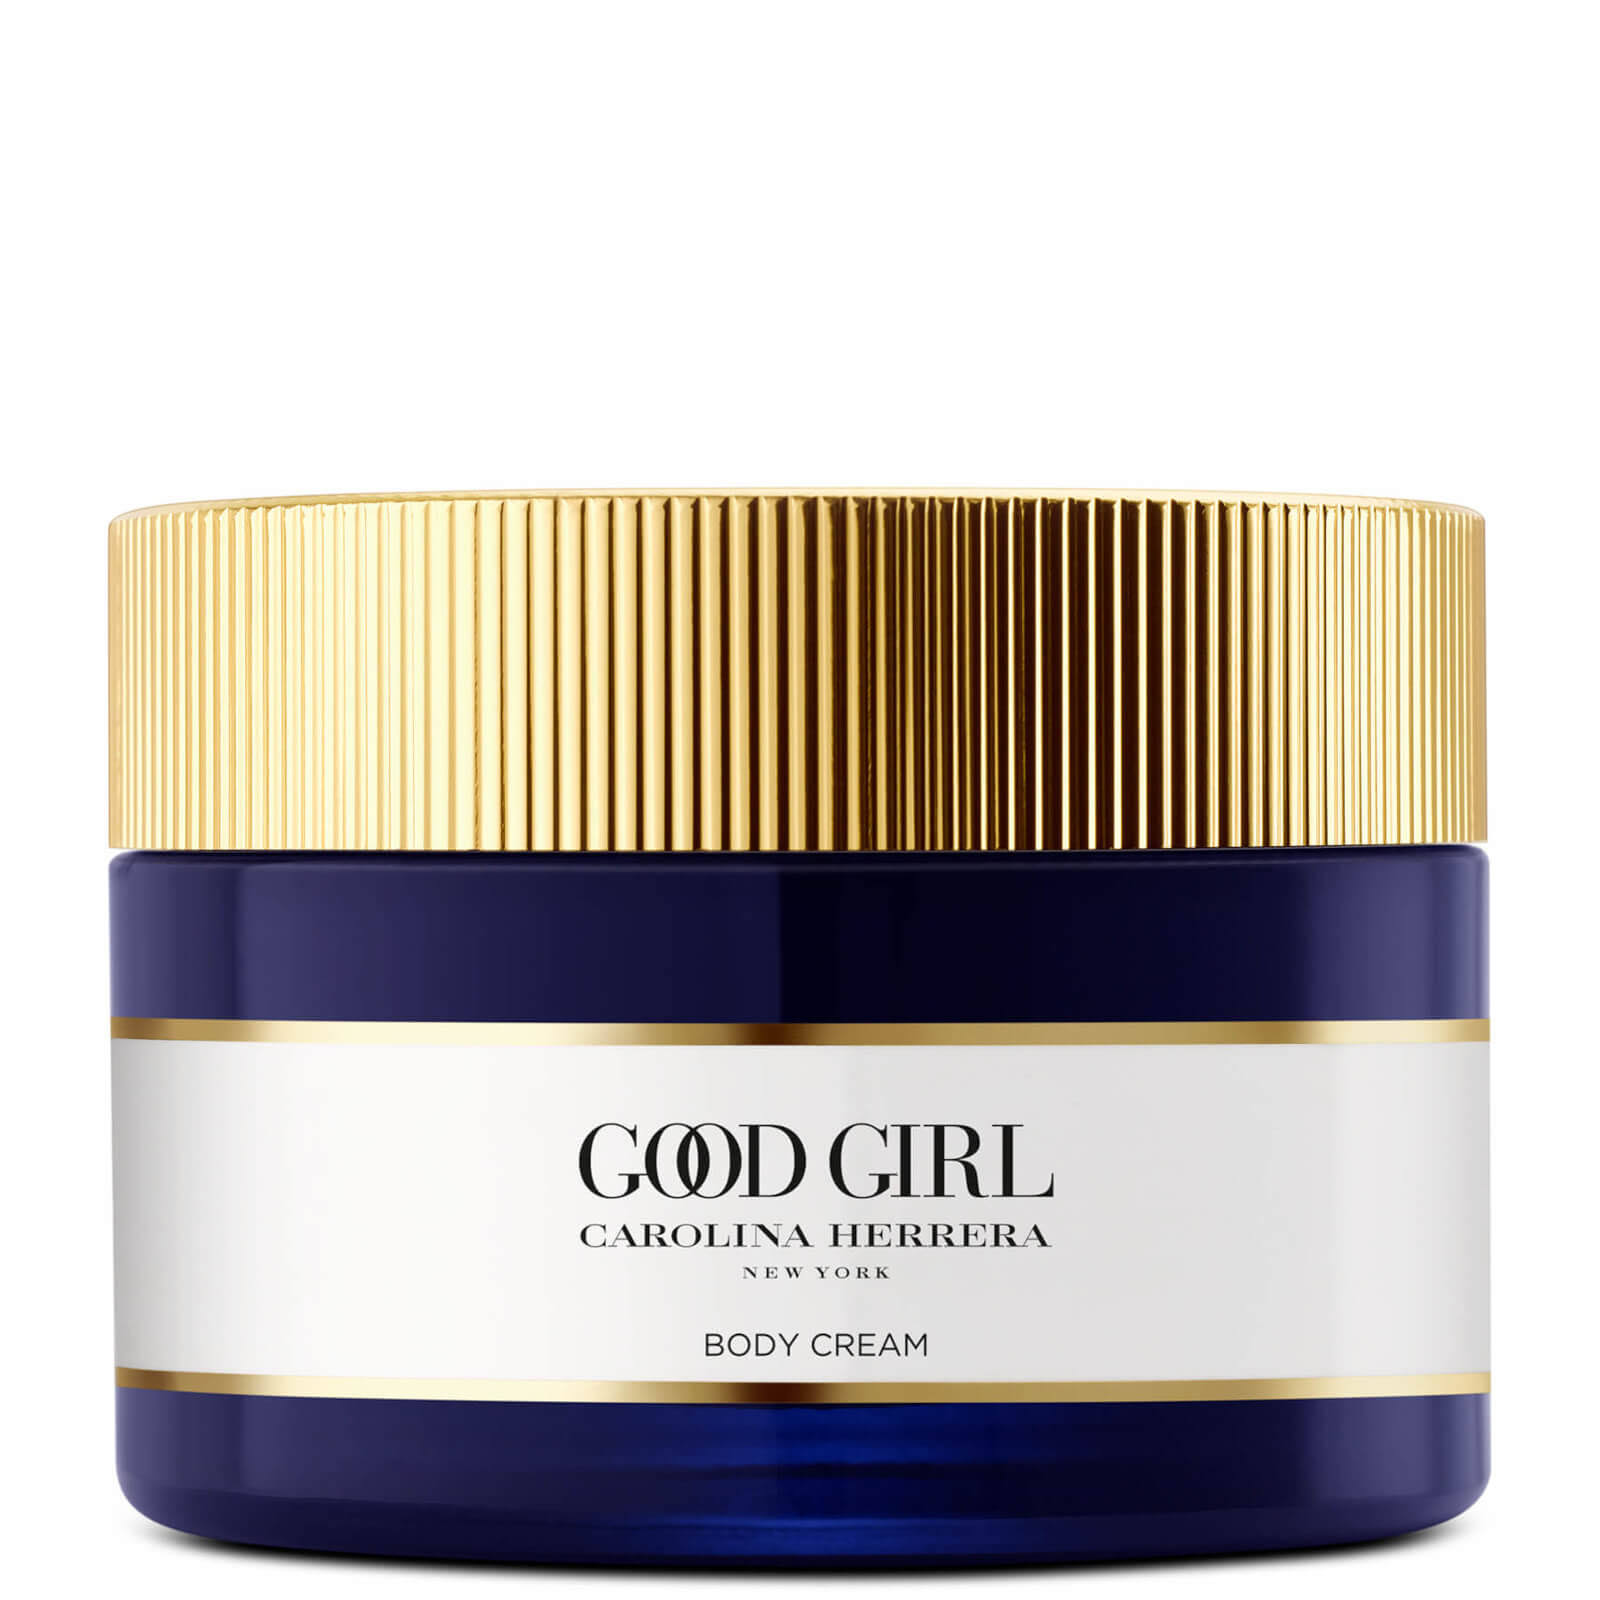 Carolina Herrera Good Girl Body Cream - 6.8oz